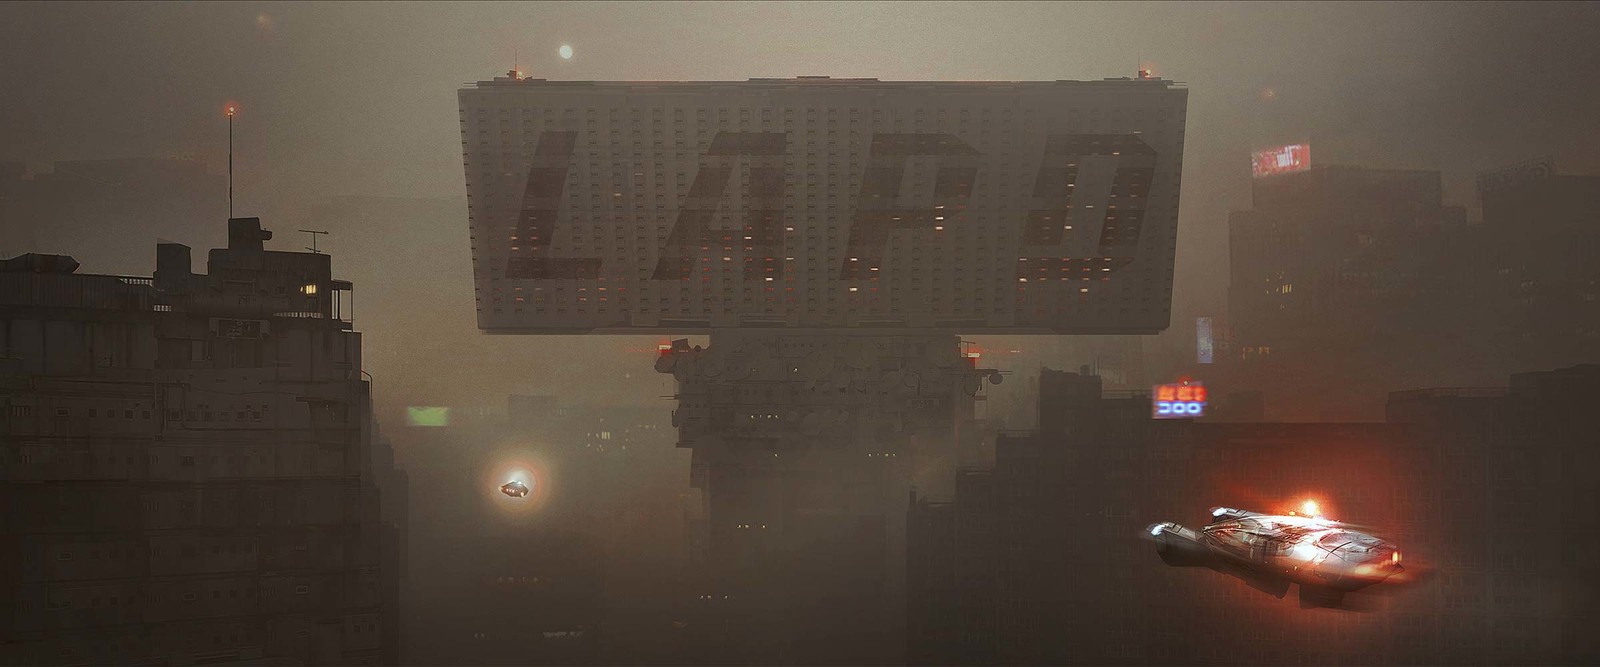 Blade Runner 2049 Concept Art